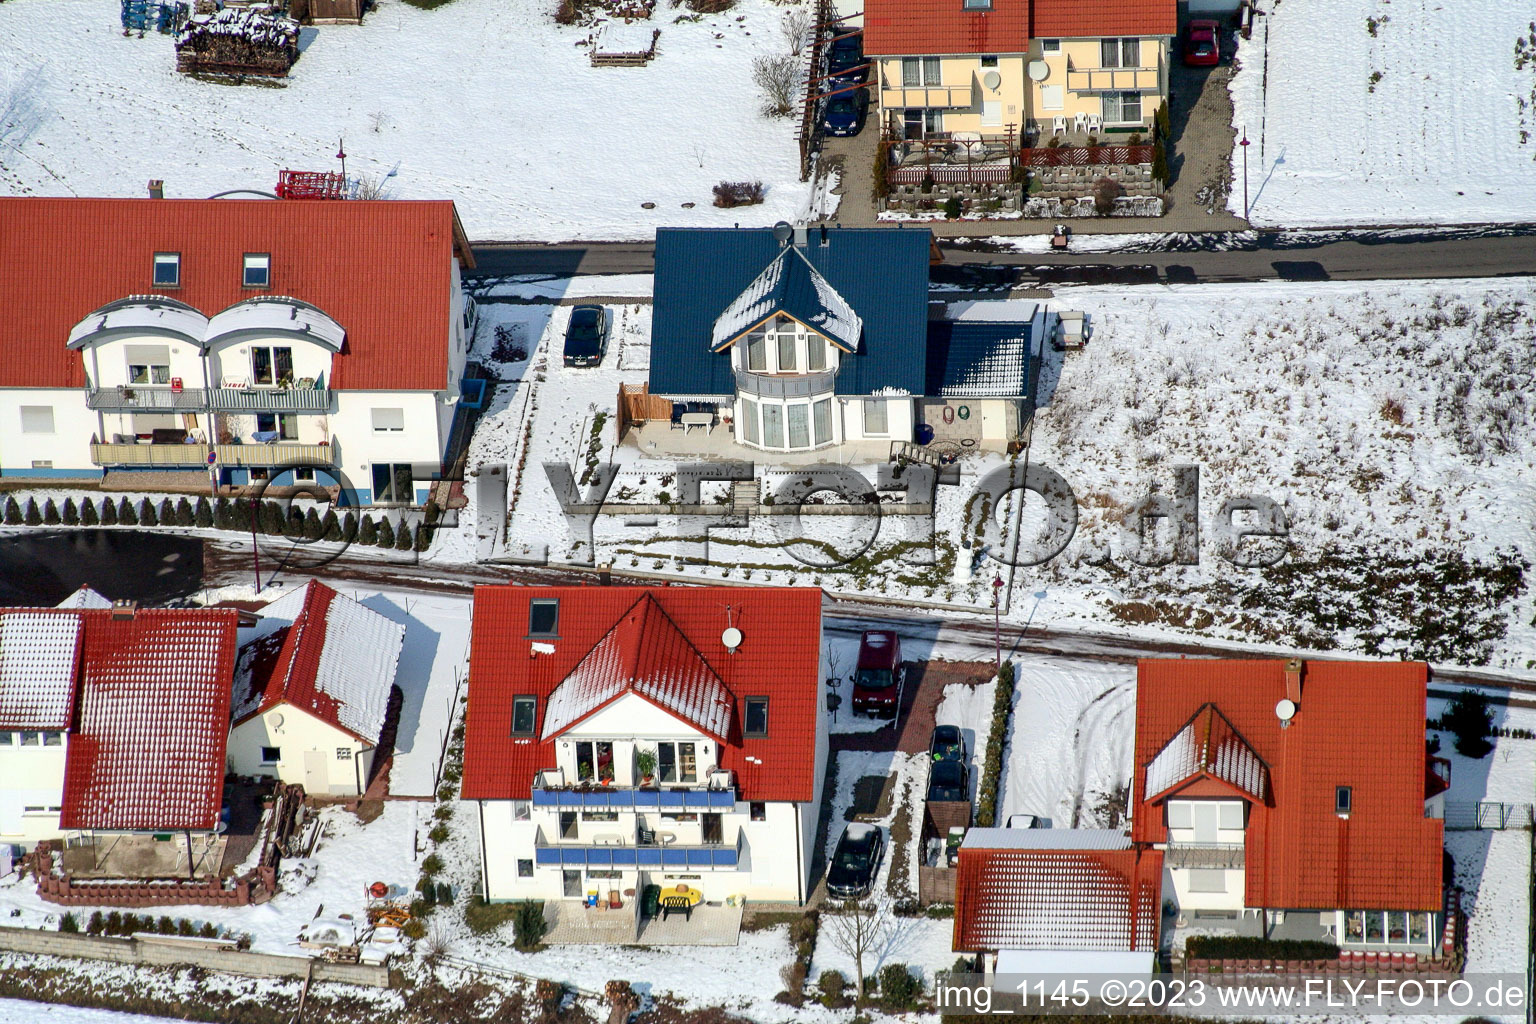 Vue aérienne de Dans la neige à Freckenfeld dans le département Rhénanie-Palatinat, Allemagne